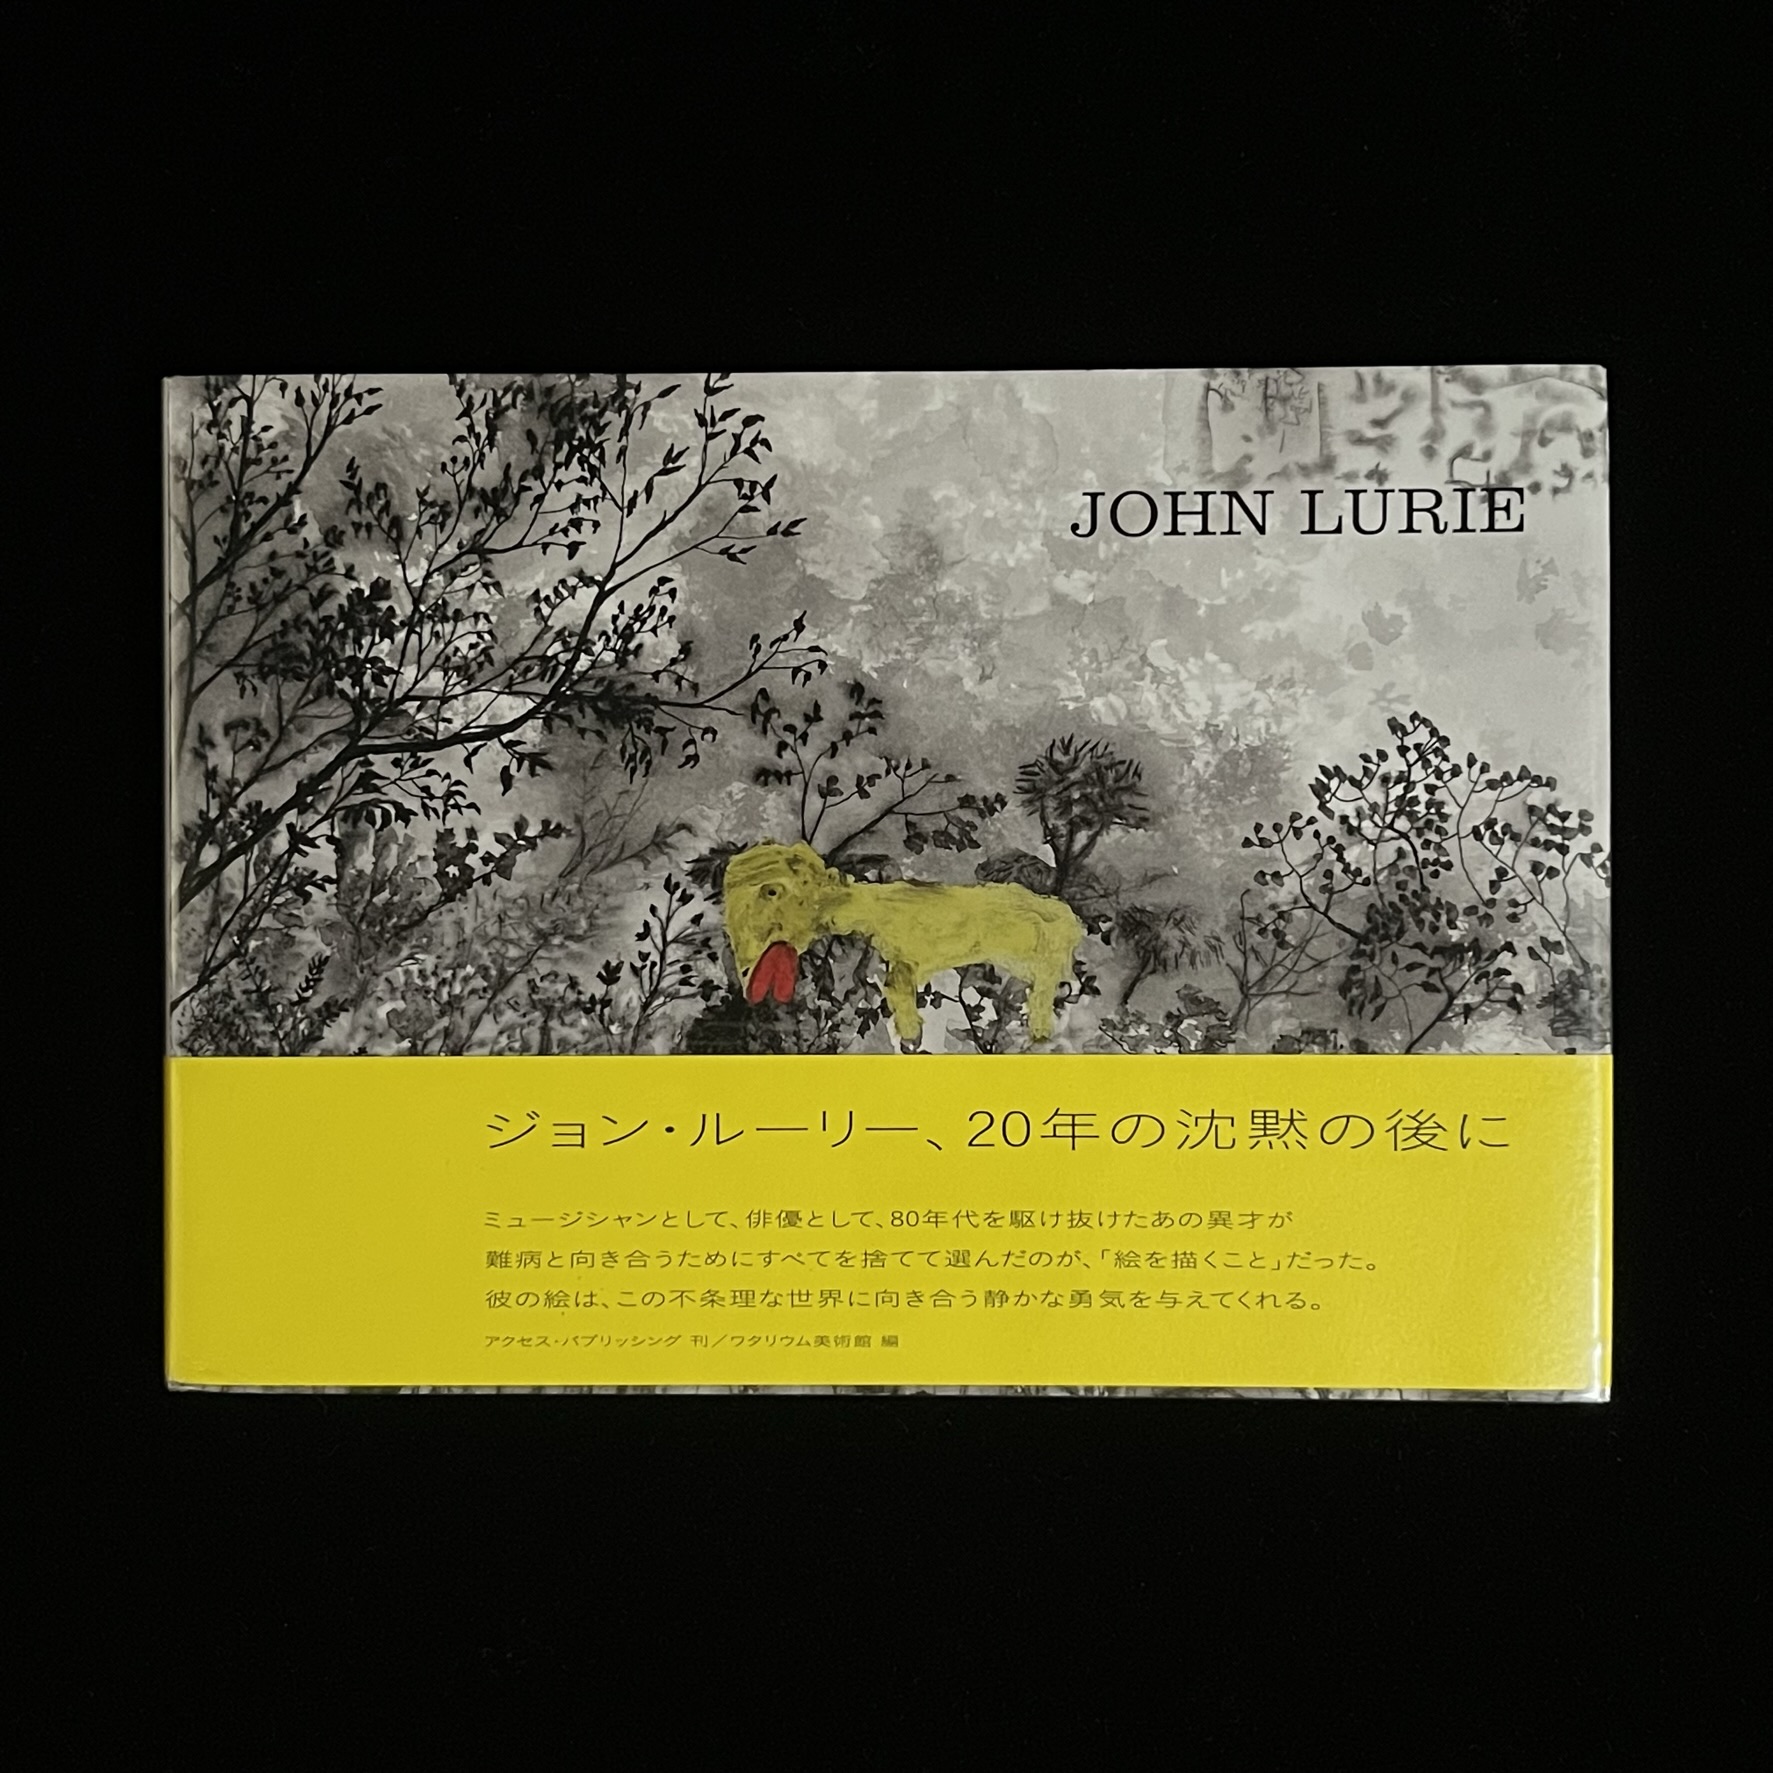 『JOHN LURIE』の表紙の写真。John Lurie（ジョン・ルーリー）さんの絵が表紙に使われており、草木の背景の絵の前に正体不明の唇の厚い黄色い動物が描かれています。帯には、「ジョン・ルーリー、20年の沈黙の後に」と書かれています。